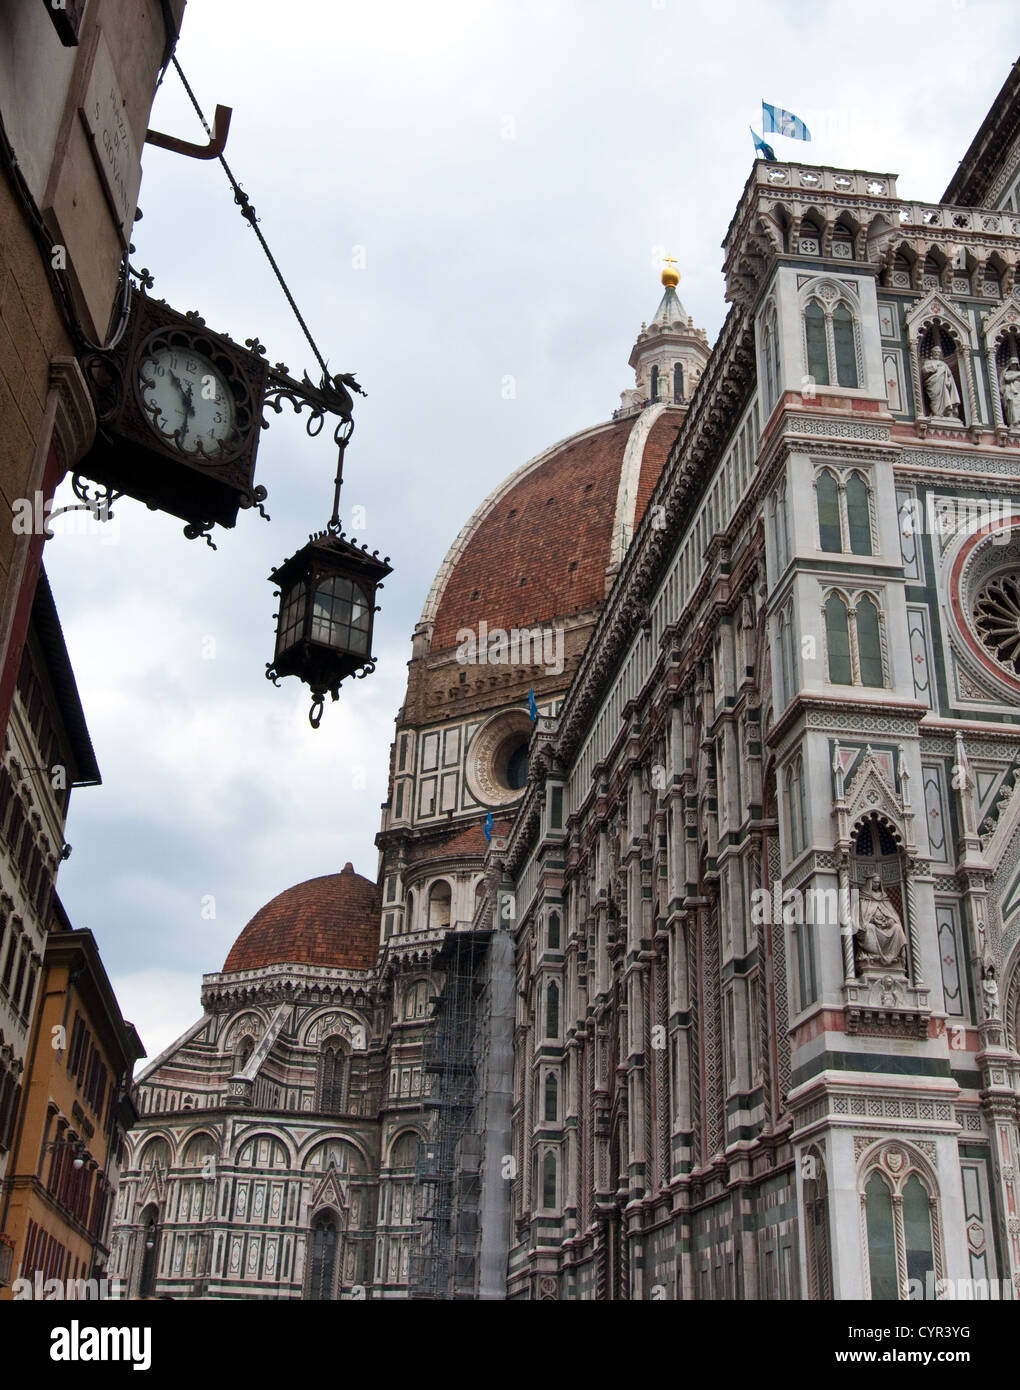 Florencia,la más bella ciudad italiana. Foto de stock